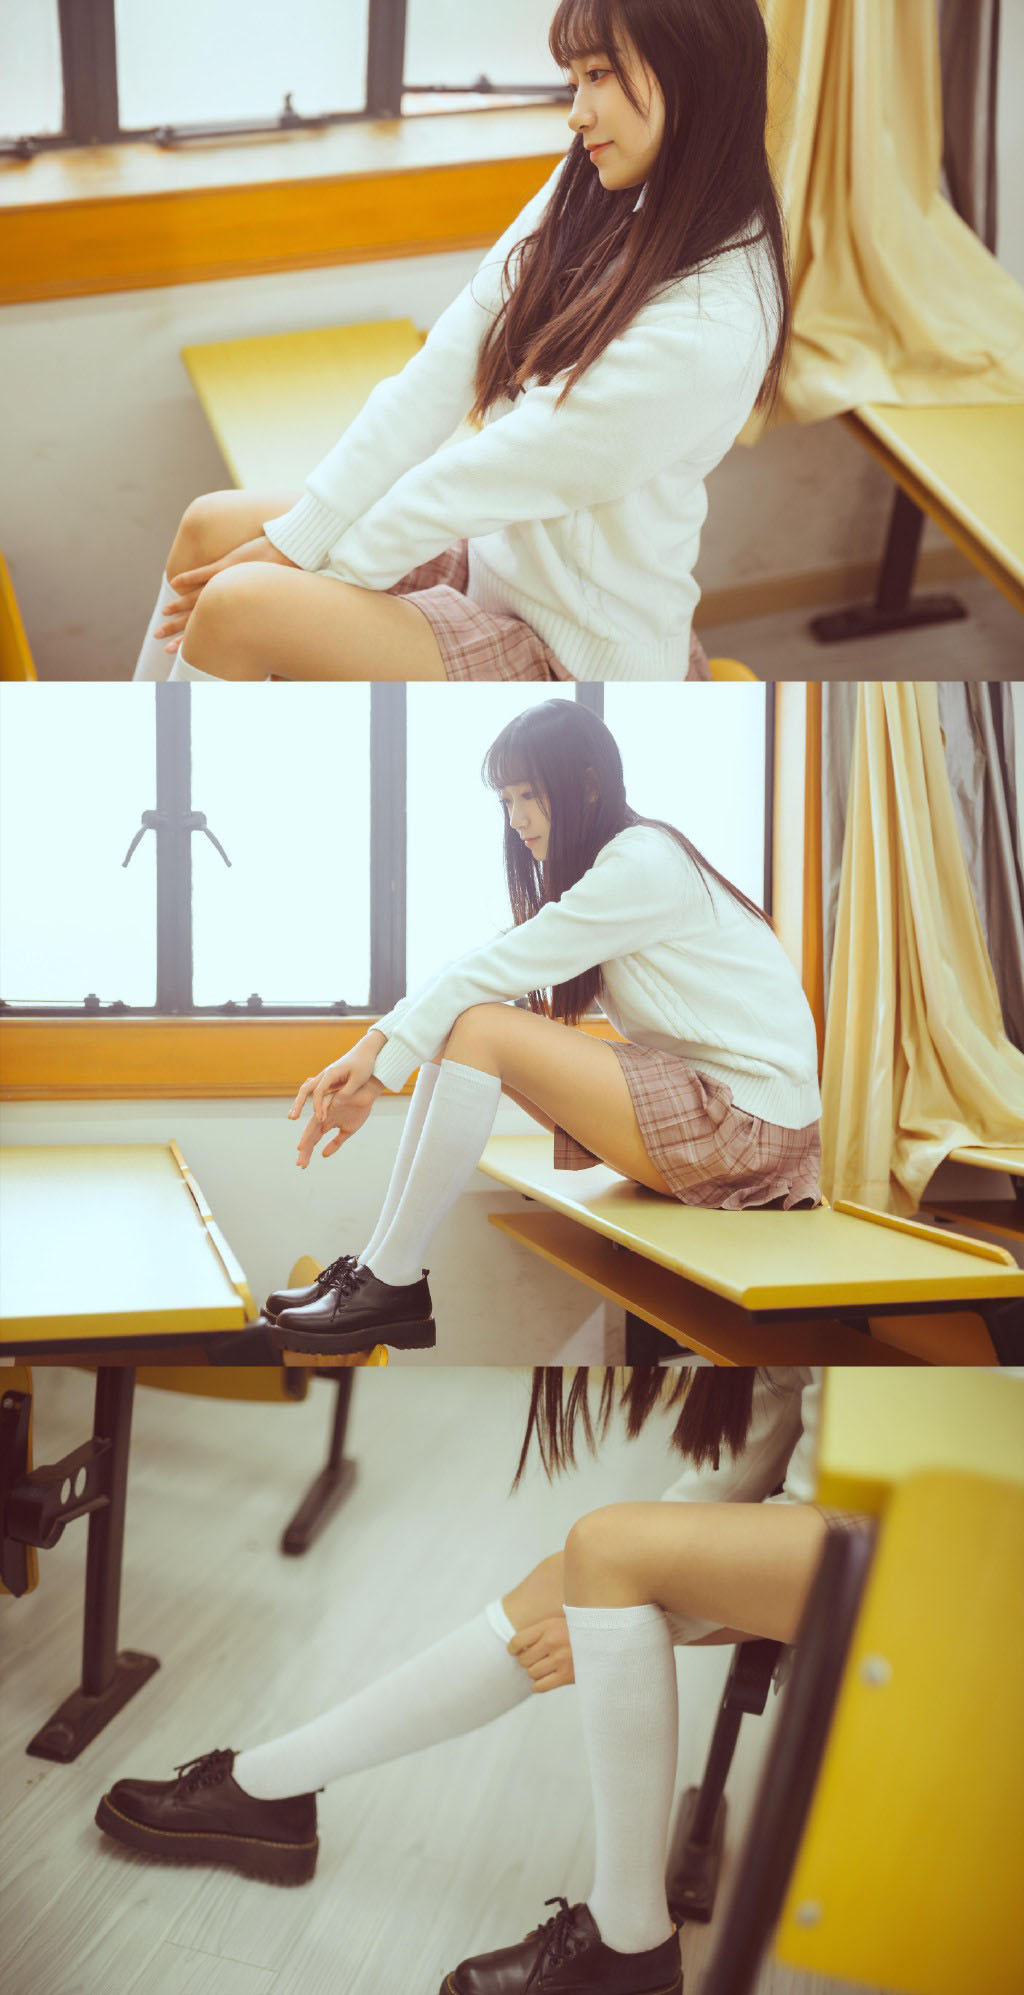 柠檬酱 | 绅士福利站 JK美女学姐白丝美腿性感教室写真图片 唯美写真  